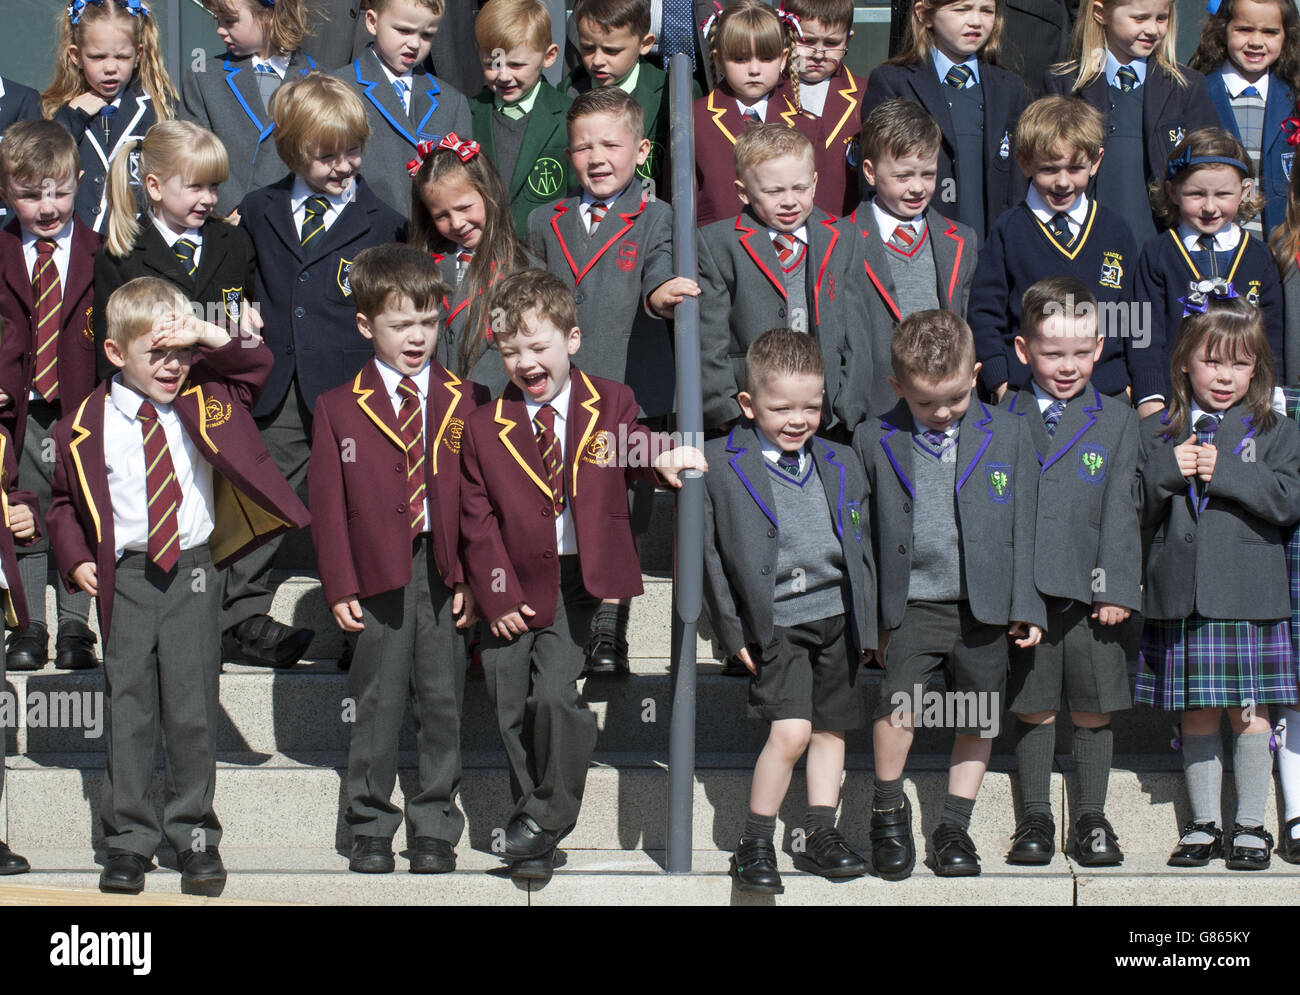 17 Zwillingsgruppen versammelten sich für eine Fotozelle in Greenock, Schottland, wo eine Rekordzahl von 19 Zwillingsgruppen ihre Ausbildung an den Inverclyde Primary Schools beginnen sollen. Stockfoto